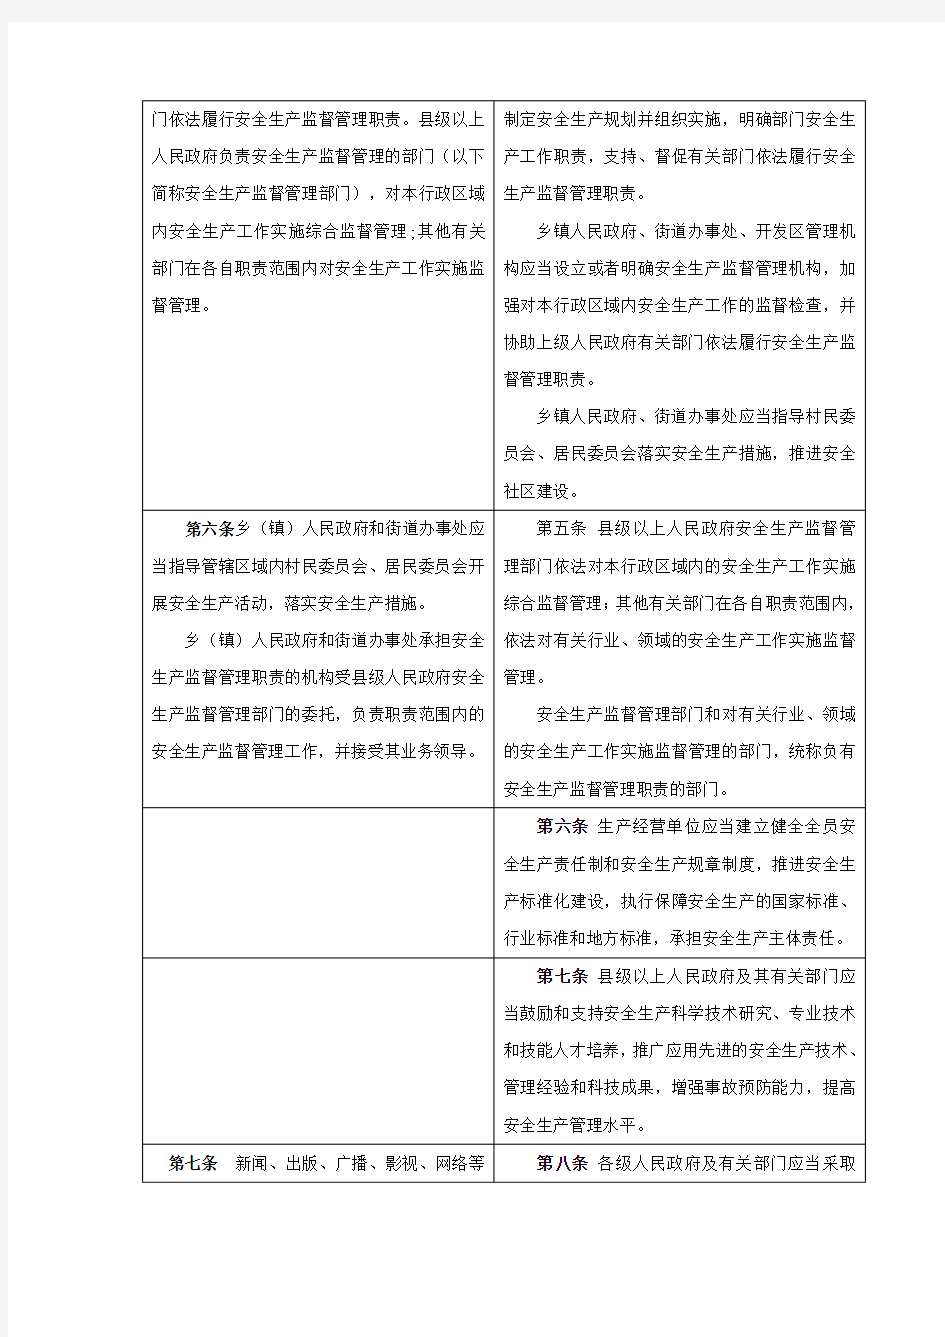 山东省安全生产条例修改前后对照表2016版